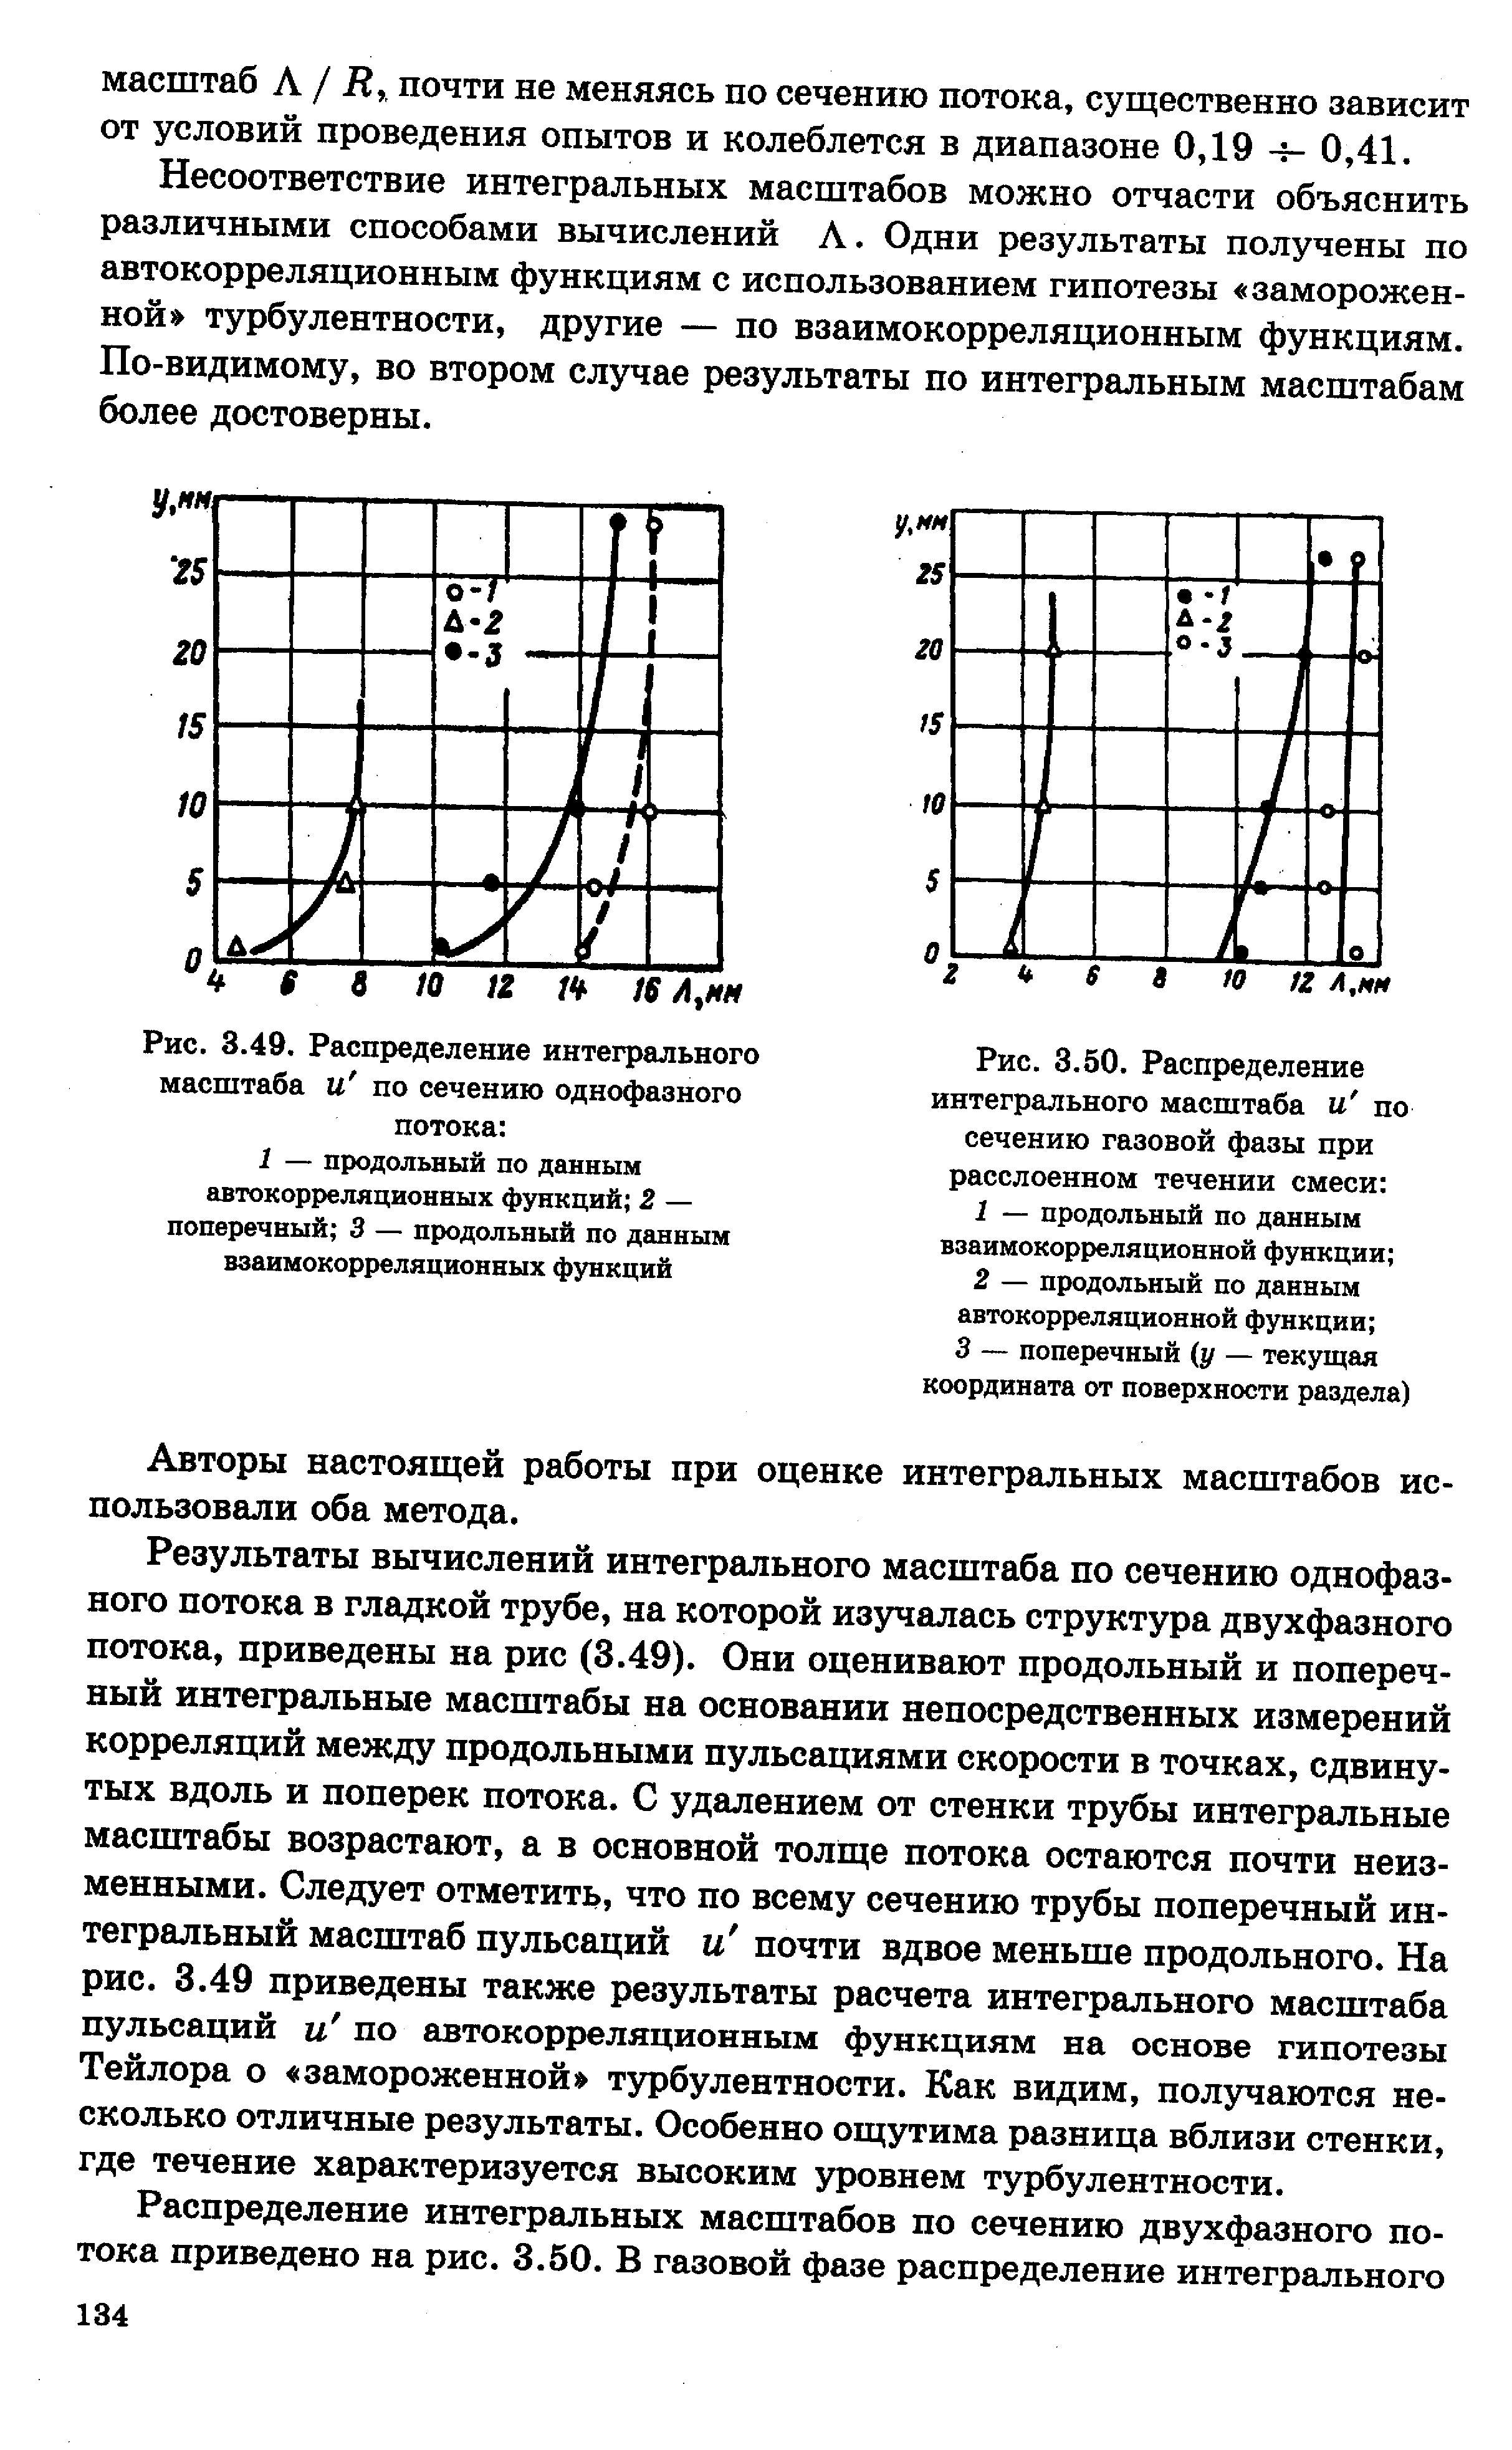 Рис. 3.49. Распределение интегрального масштаба и по сечению однофазного потока 
